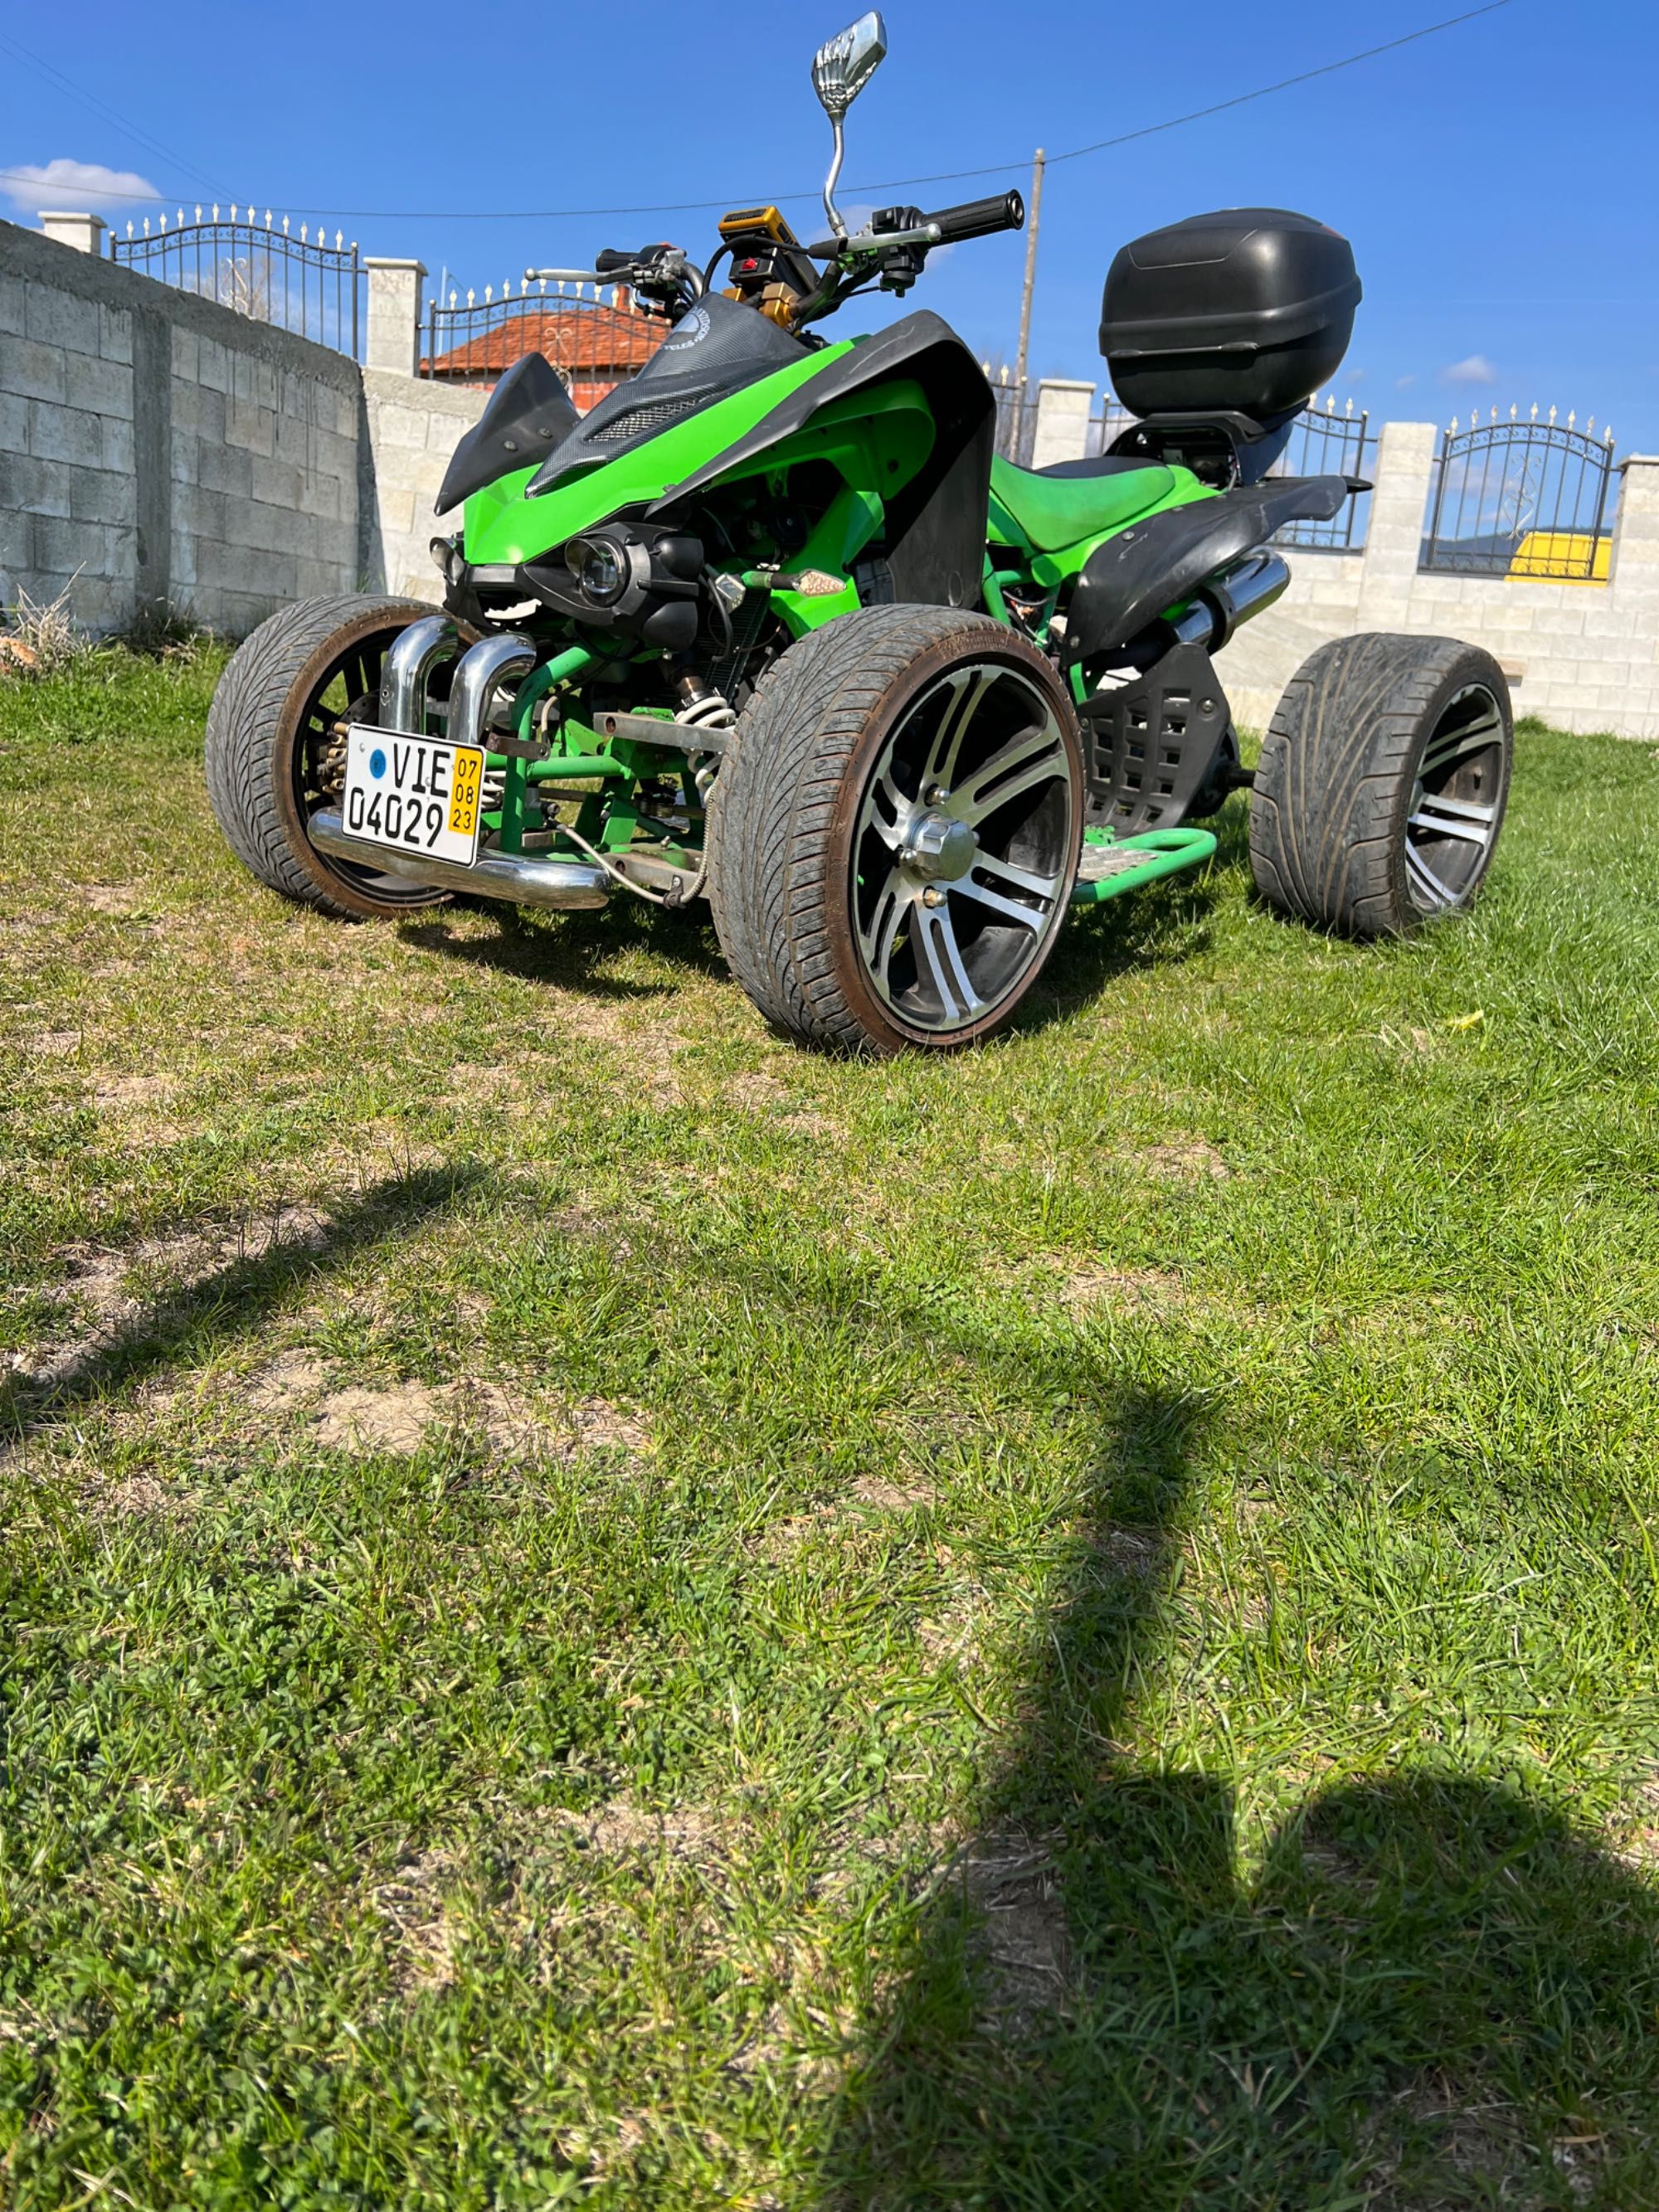 ATV Jinling 300 cc